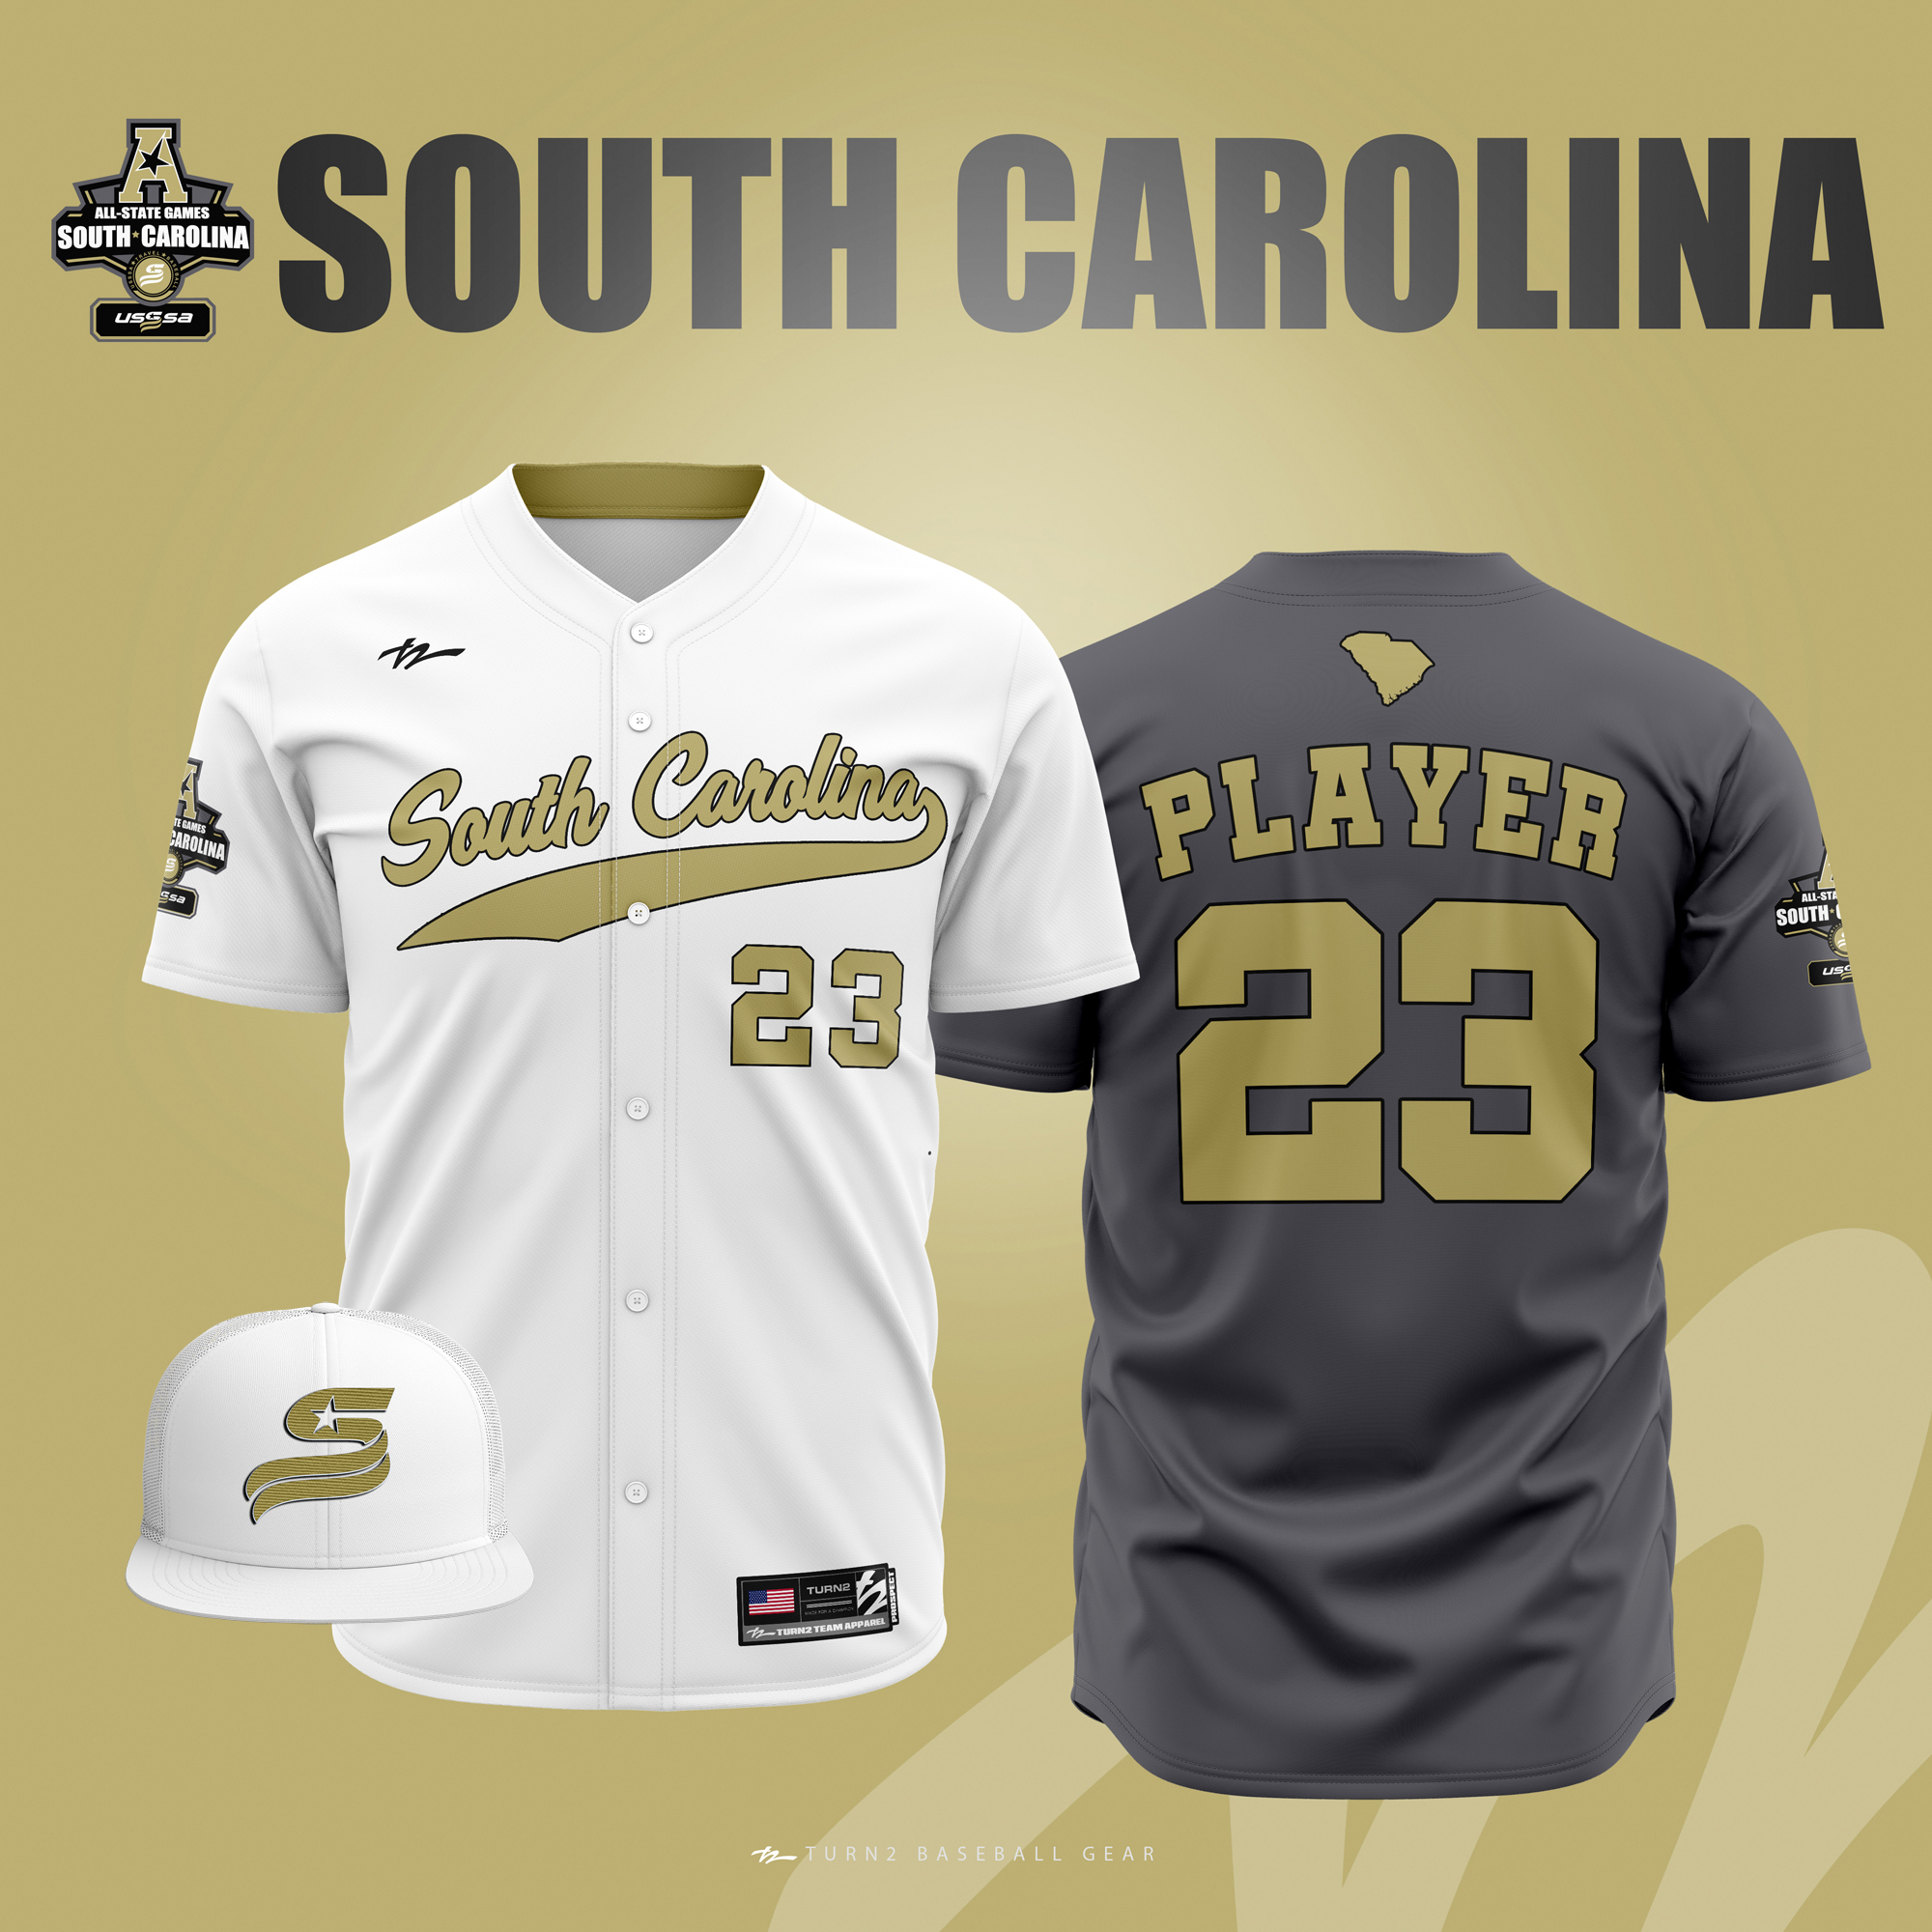 South Carolina Uniforms